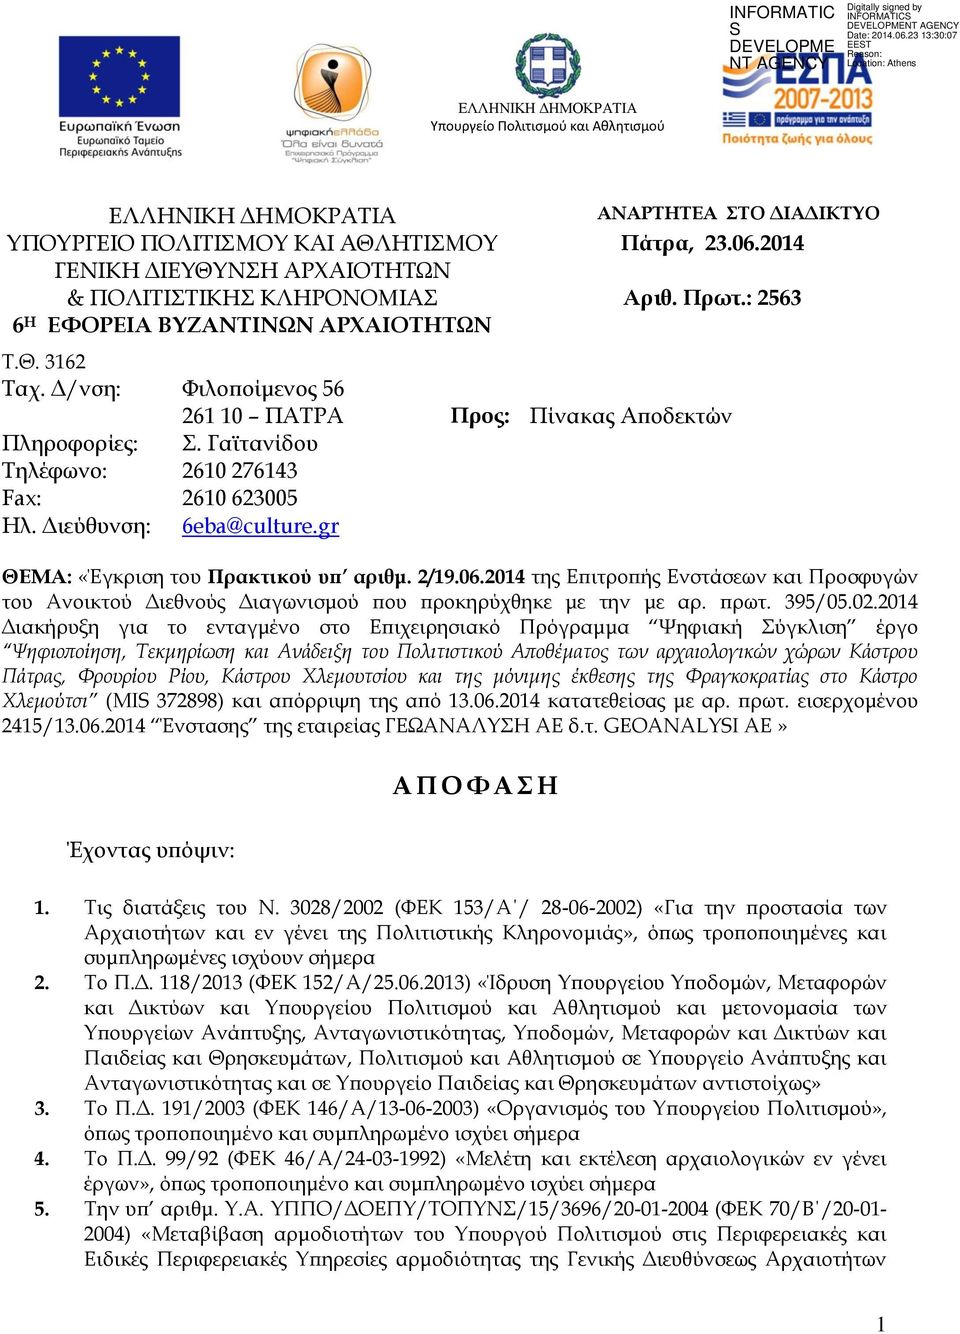 Διεύθυνση: 6eba@culture.gr ΘΕΜΑ: «Έγκριση του Πρακτικού υπ αριθμ. 2/19.06.2014 της Επιτροπής Ενστάσεων και Προσφυγών του Ανοικτού Διεθνούς Διαγωνισμού που προκηρύχθηκε με την με αρ. πρωτ. 395/05.02.